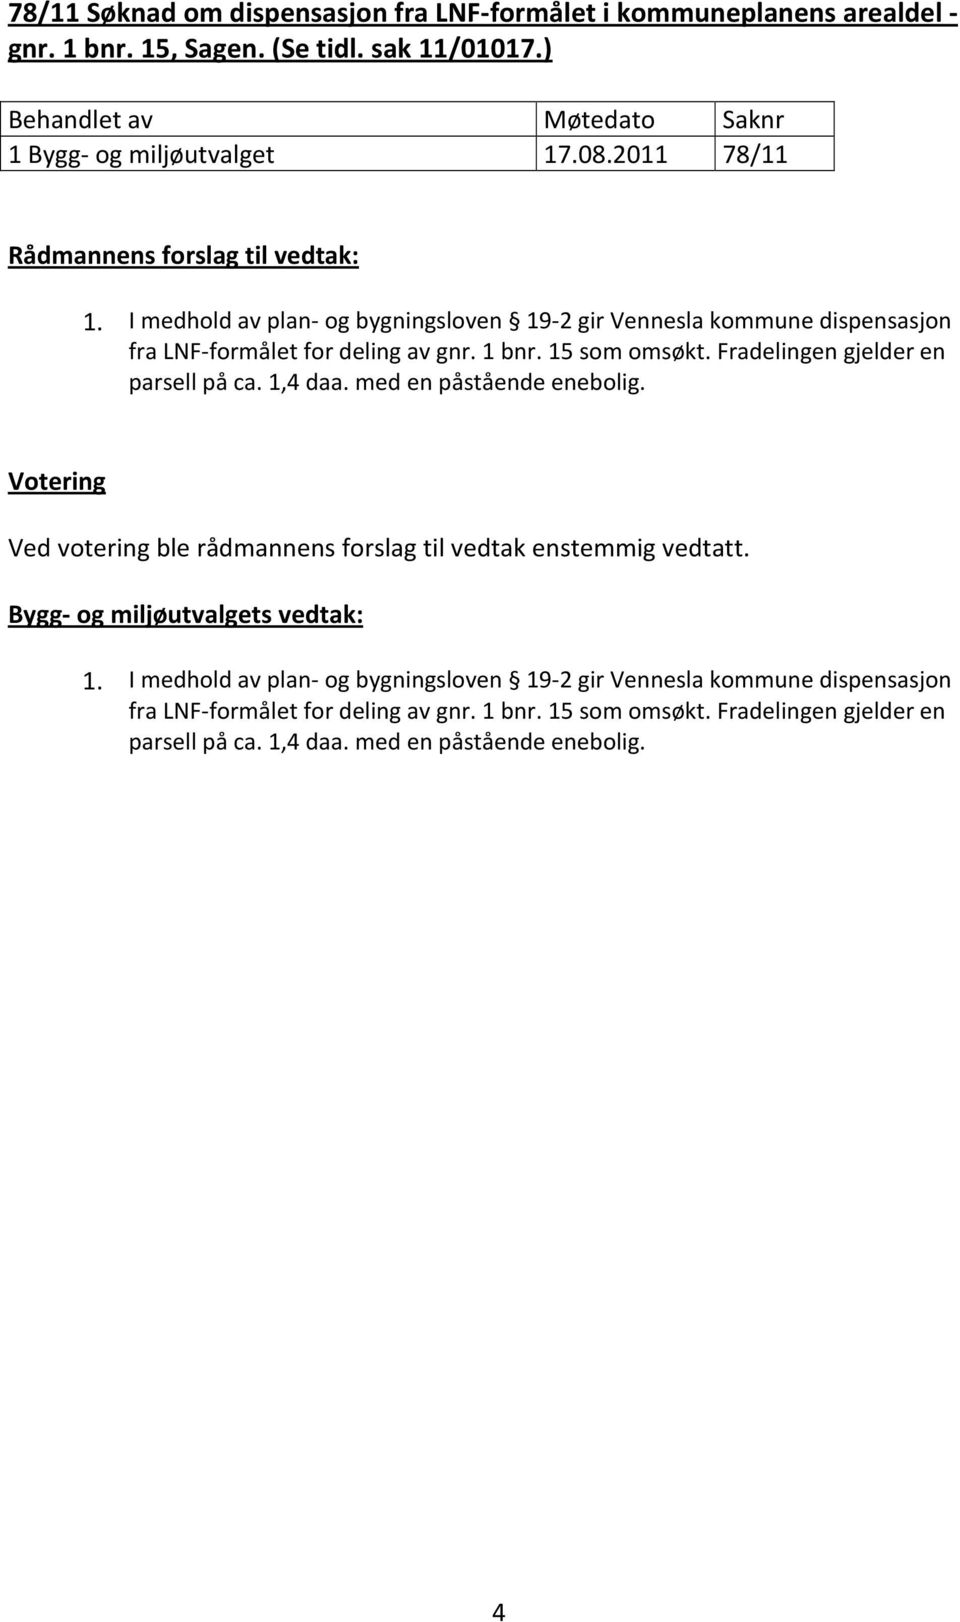 I medhold av plan- og bygningsloven 19-2 gir Vennesla kommune dispensasjon fra LNF-formålet for deling av gnr. 1 bnr. 15 som omsøkt.